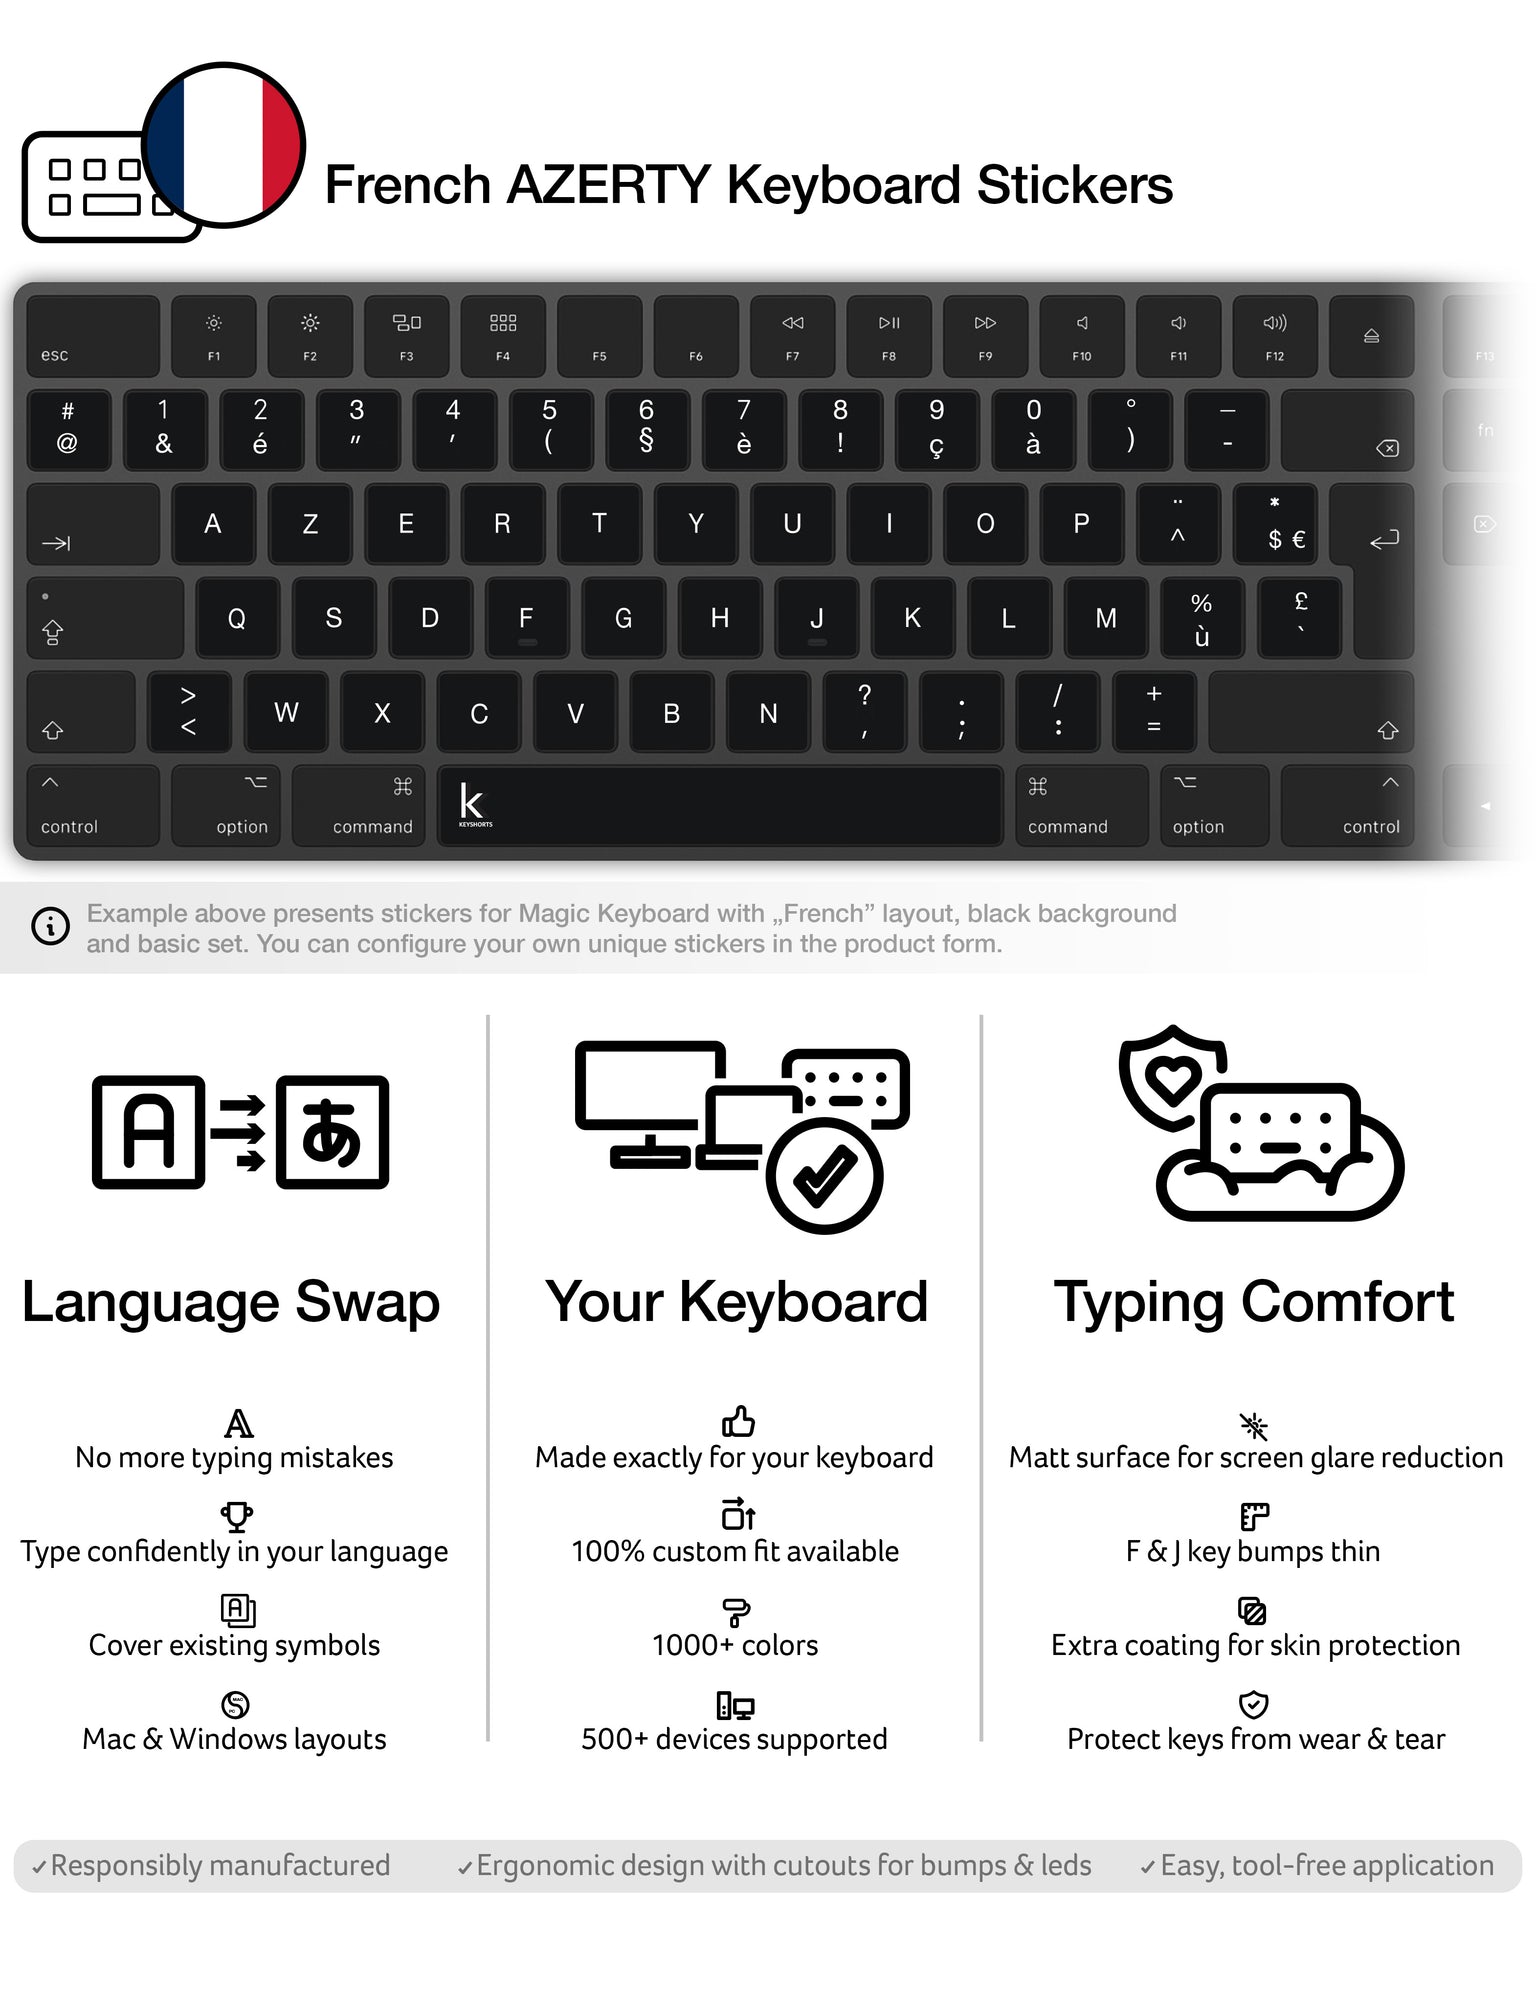 2pcs/lot French Keyboard Sticker Franch Azerty For Laptop Desktop Keyboards  Stickers 11.6 12 13.3 14 15.4 17.3 Inch Keyboard - Keyboard Covers -  AliExpress